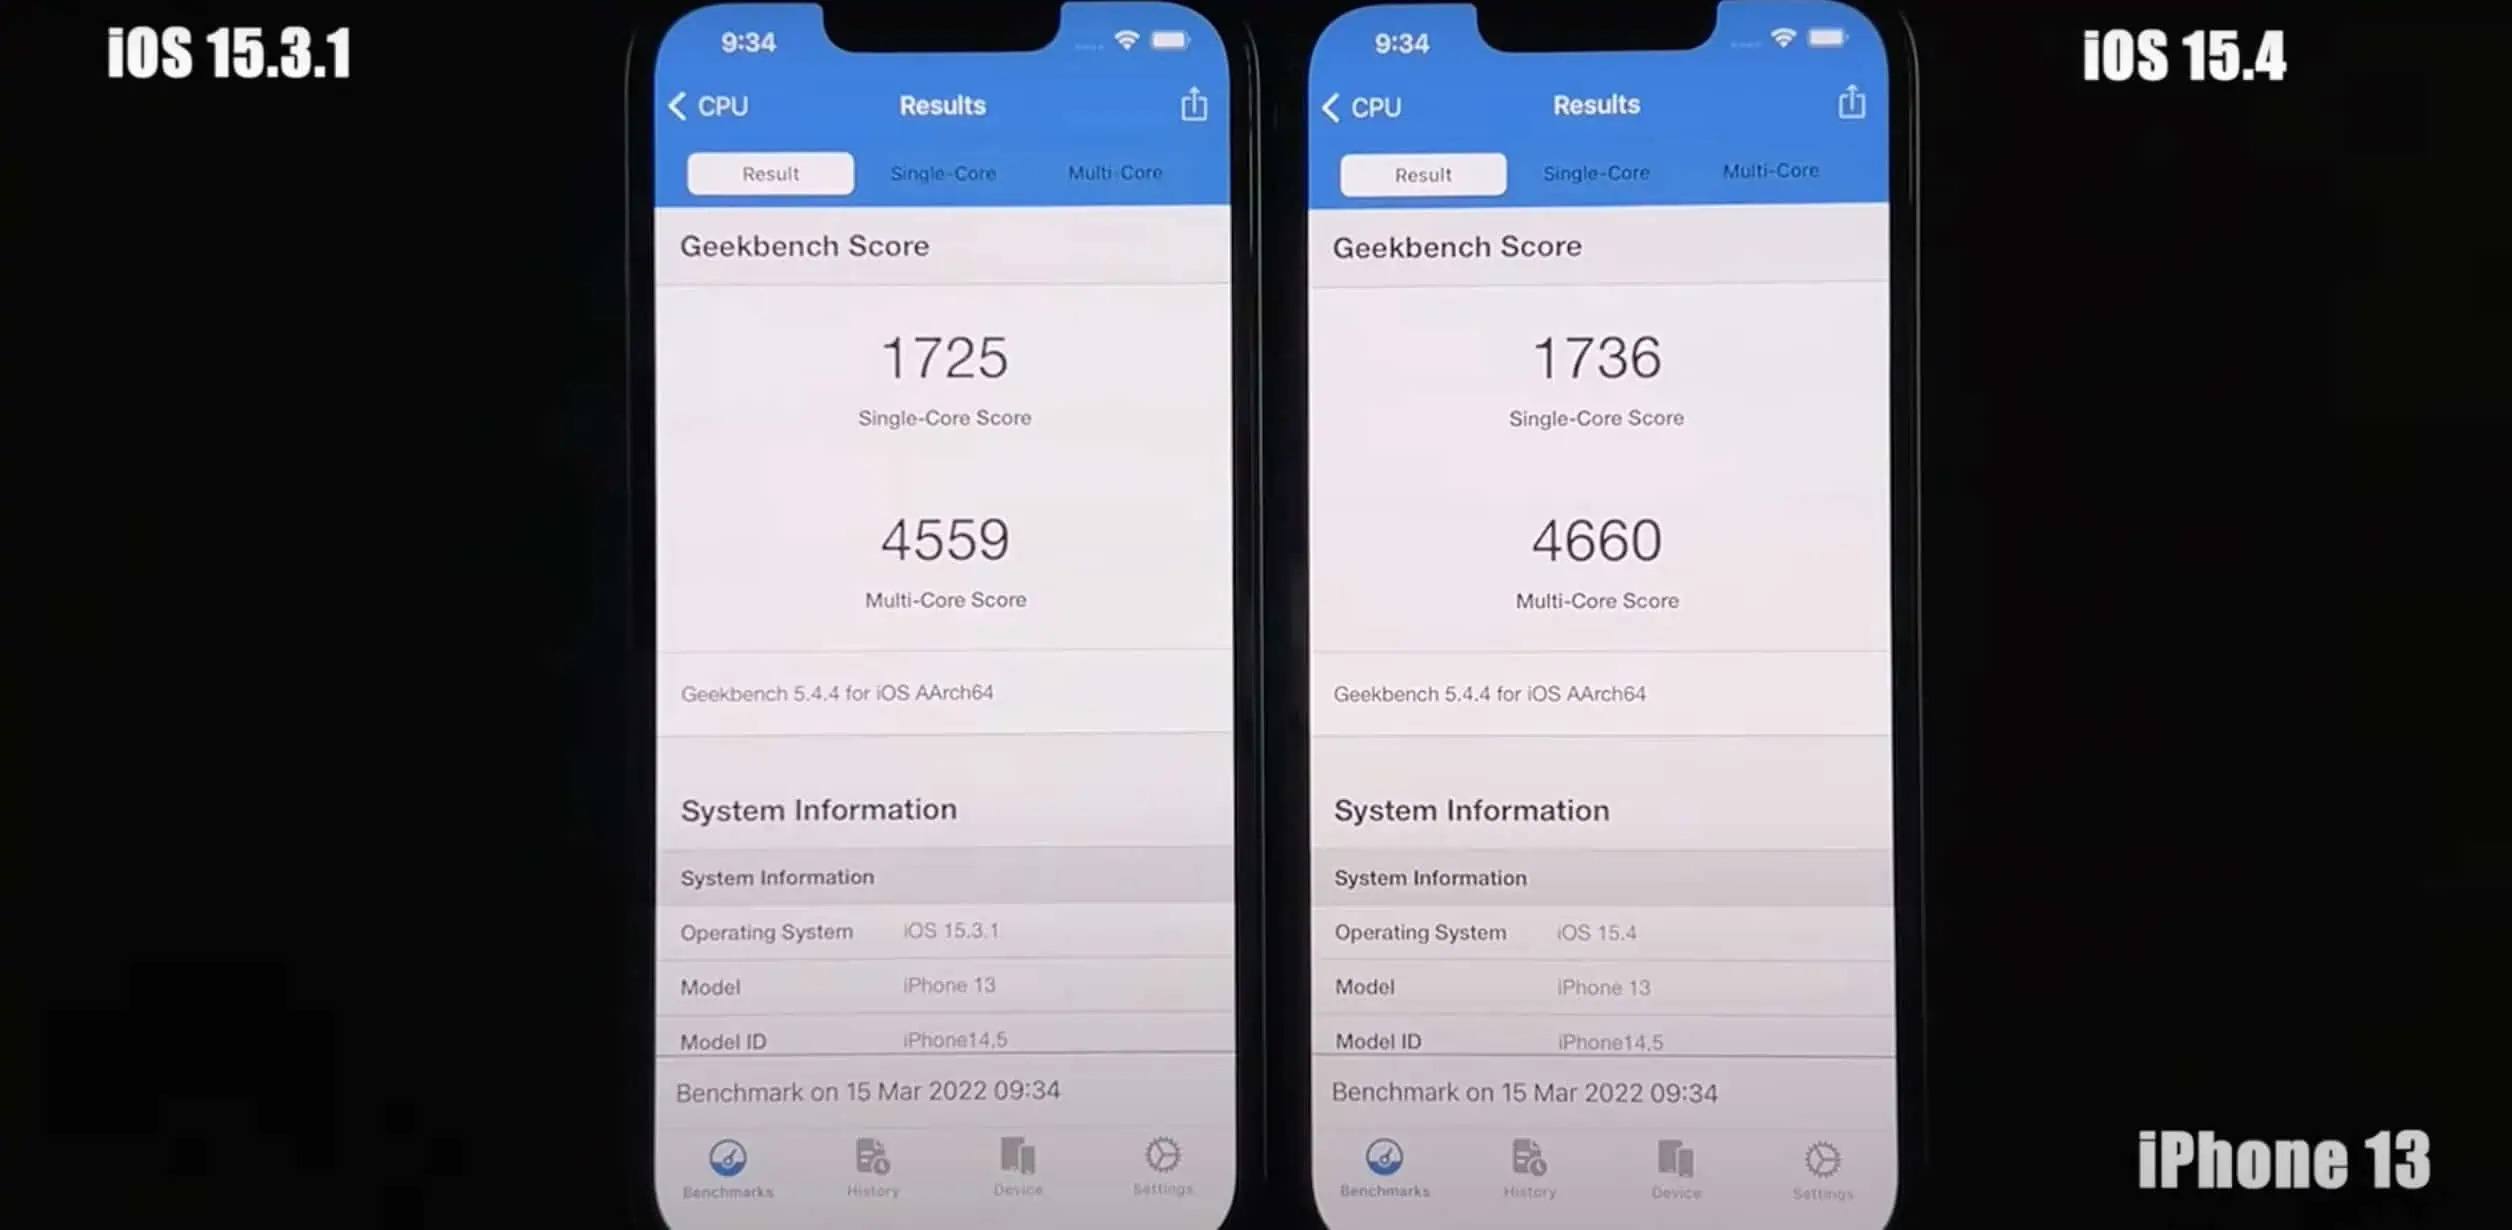 多款 iPhone升级 iOS 15.4 后跑分实测速度下降？